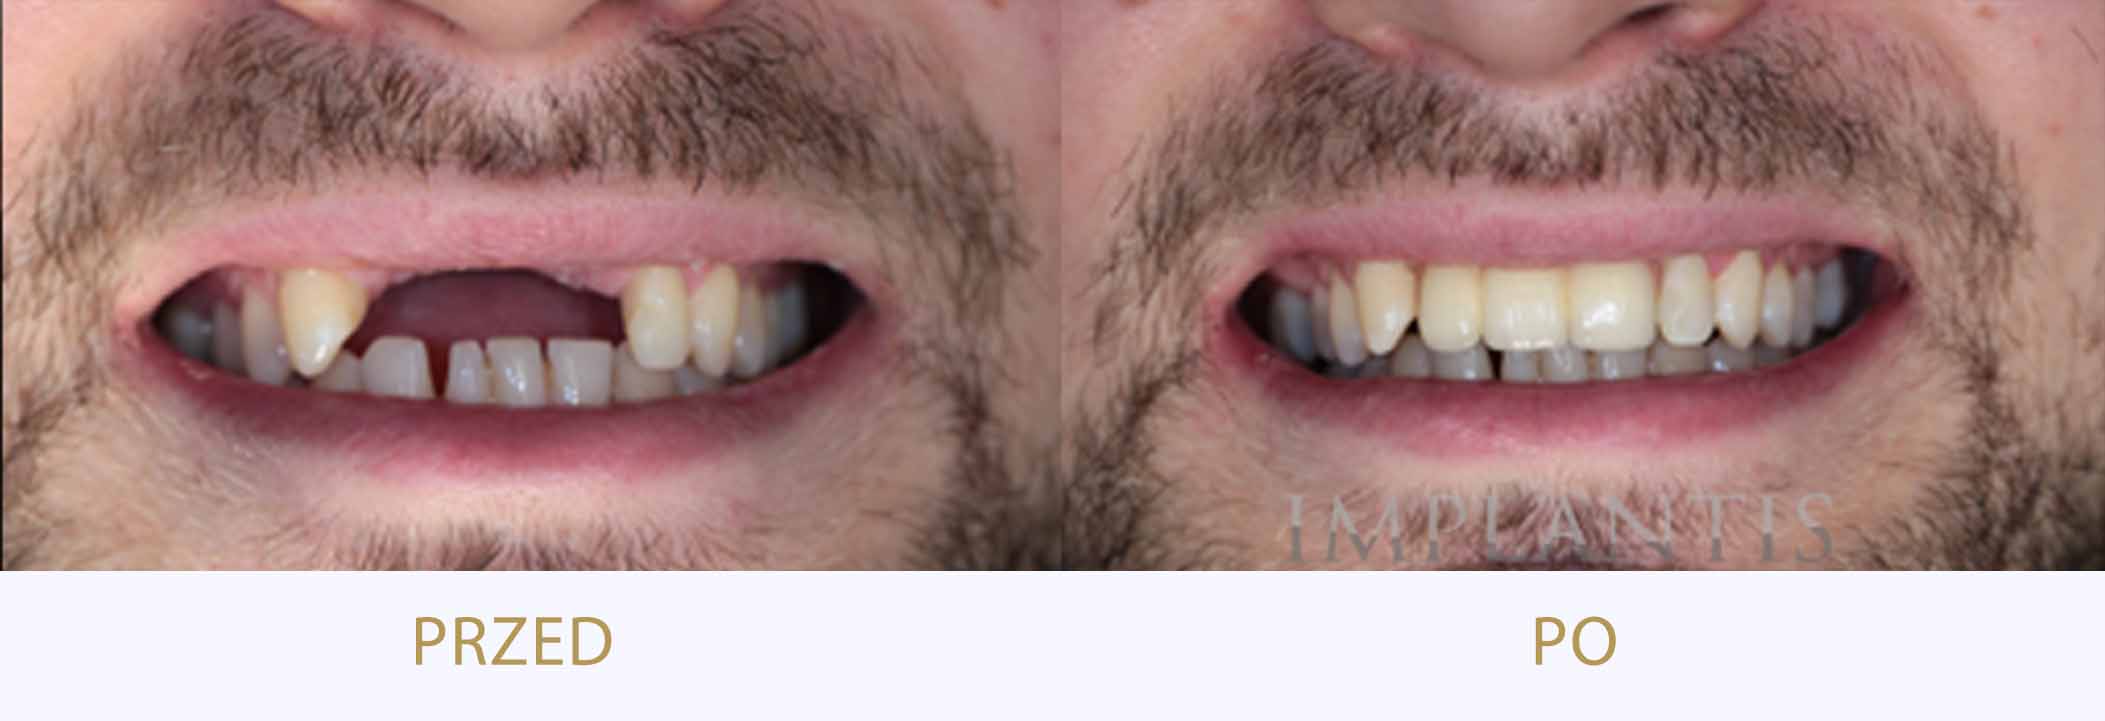 zęby przed i po leczeniu: mosty dentystyczne